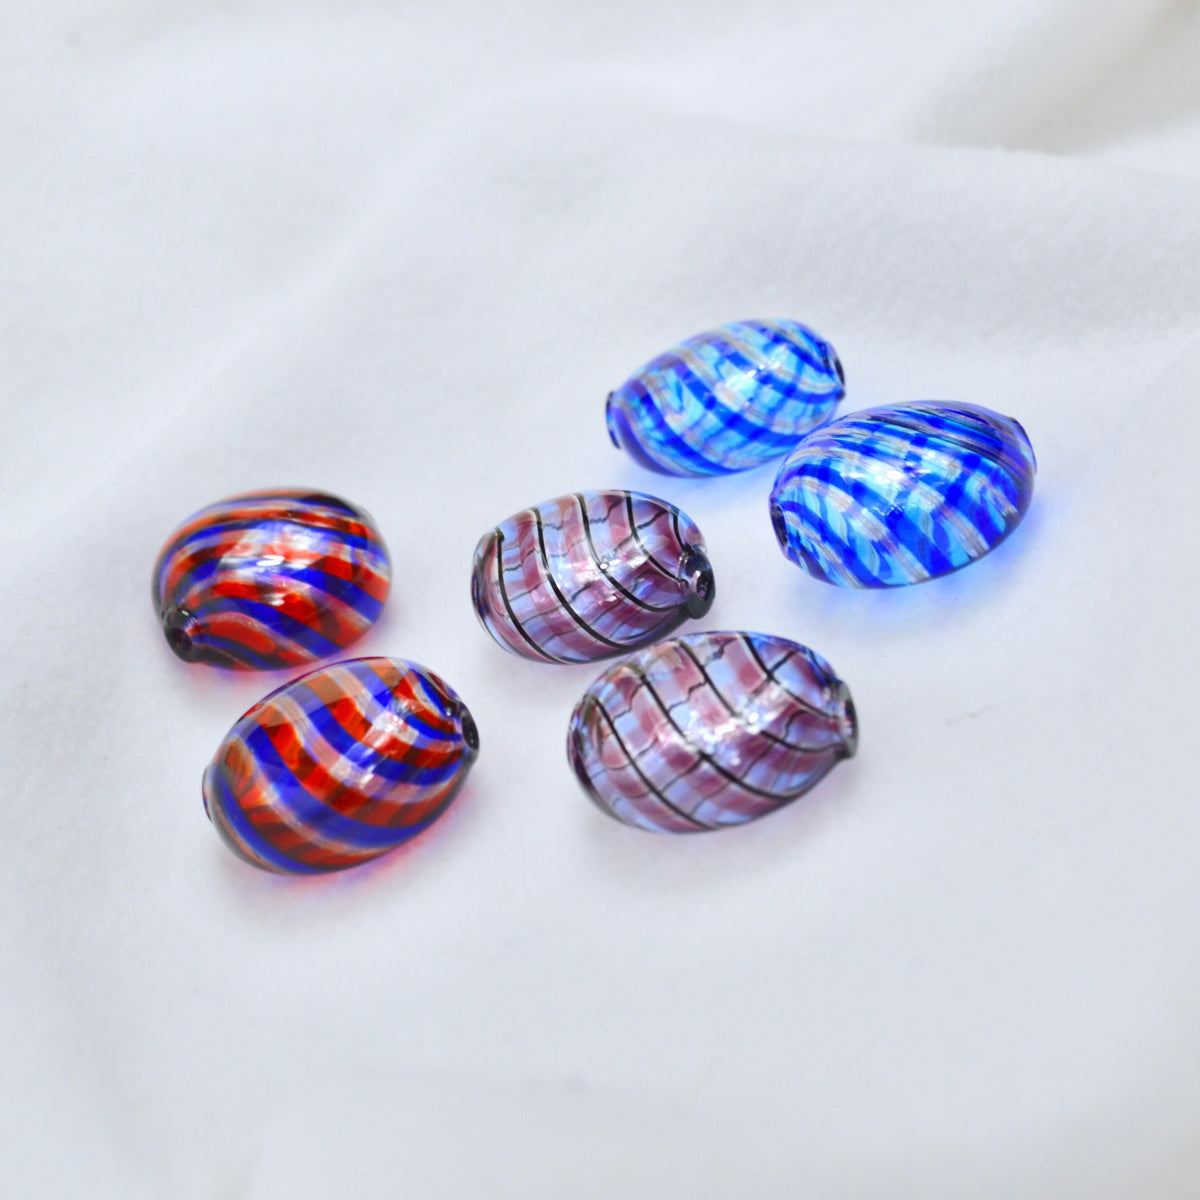 Murano Glass Filigrana Penny Beads, Set of 4, Made in Italy - My Italian Decor